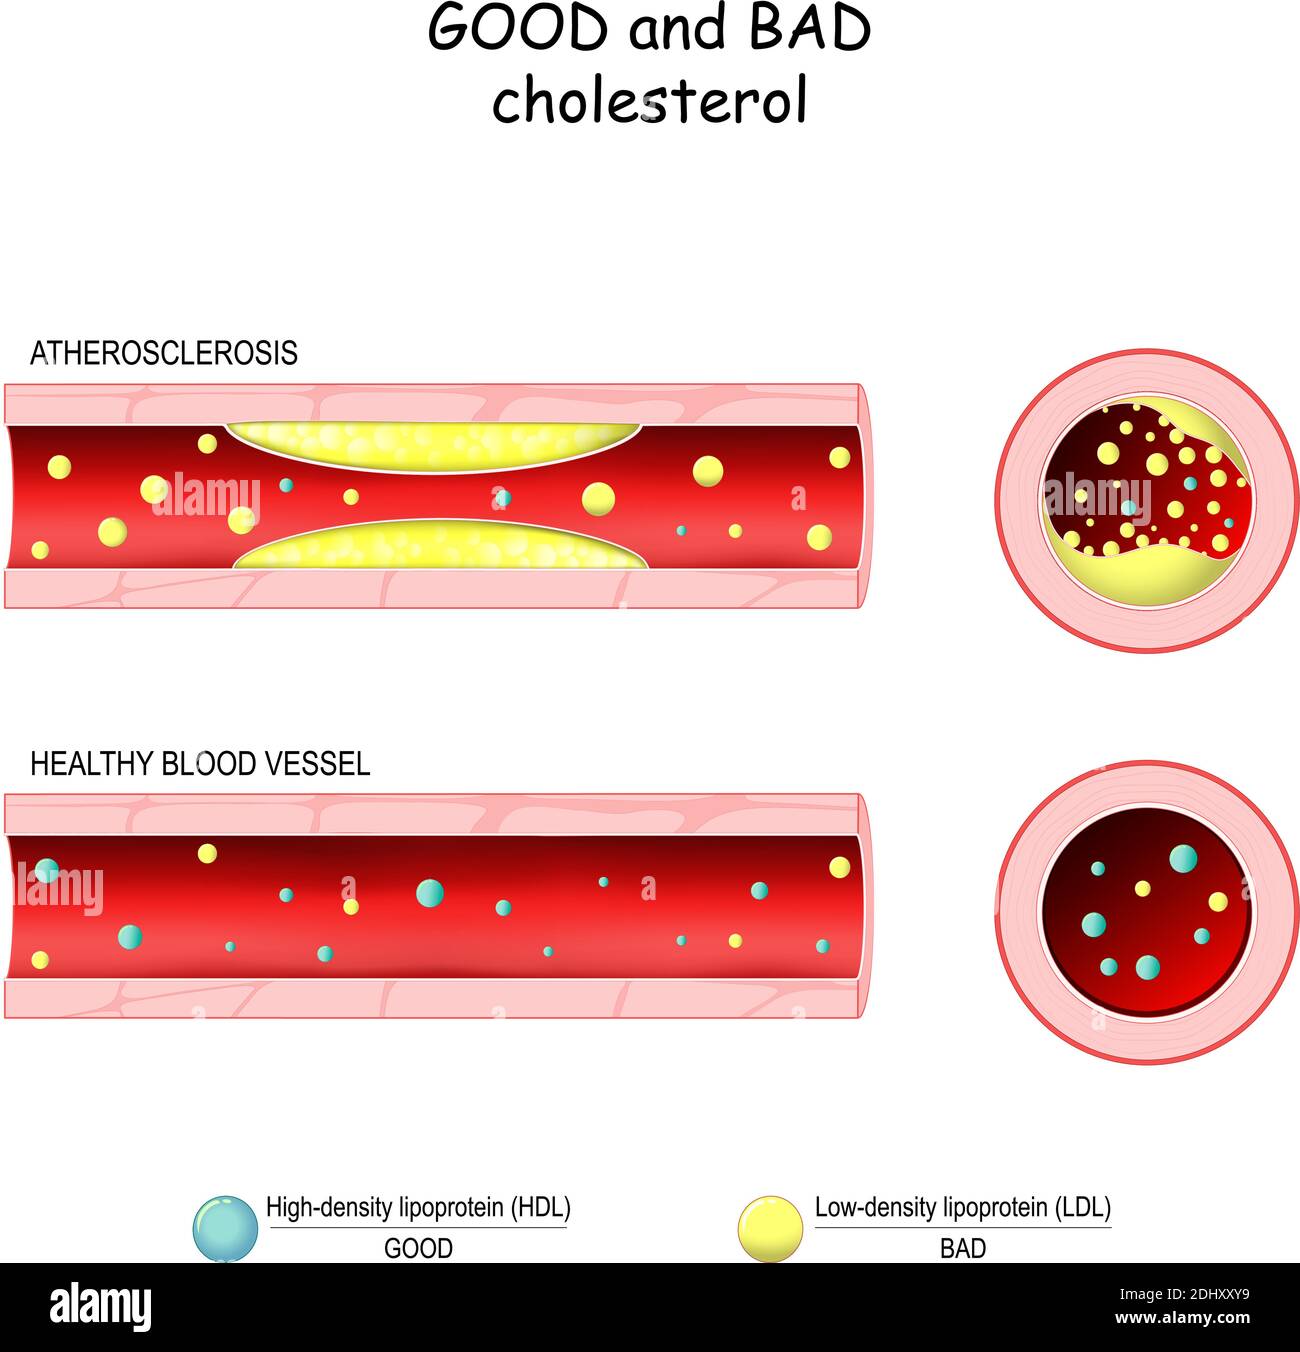 Gutes (HDL) und schlechtes (LDL) Cholesterin. Gesunde Blutgefäße und Atherosklerose. Querschnitt des Blutgefäßes. Lipoprotein mit niedriger Dichte und hoher Dichte Stock Vektor